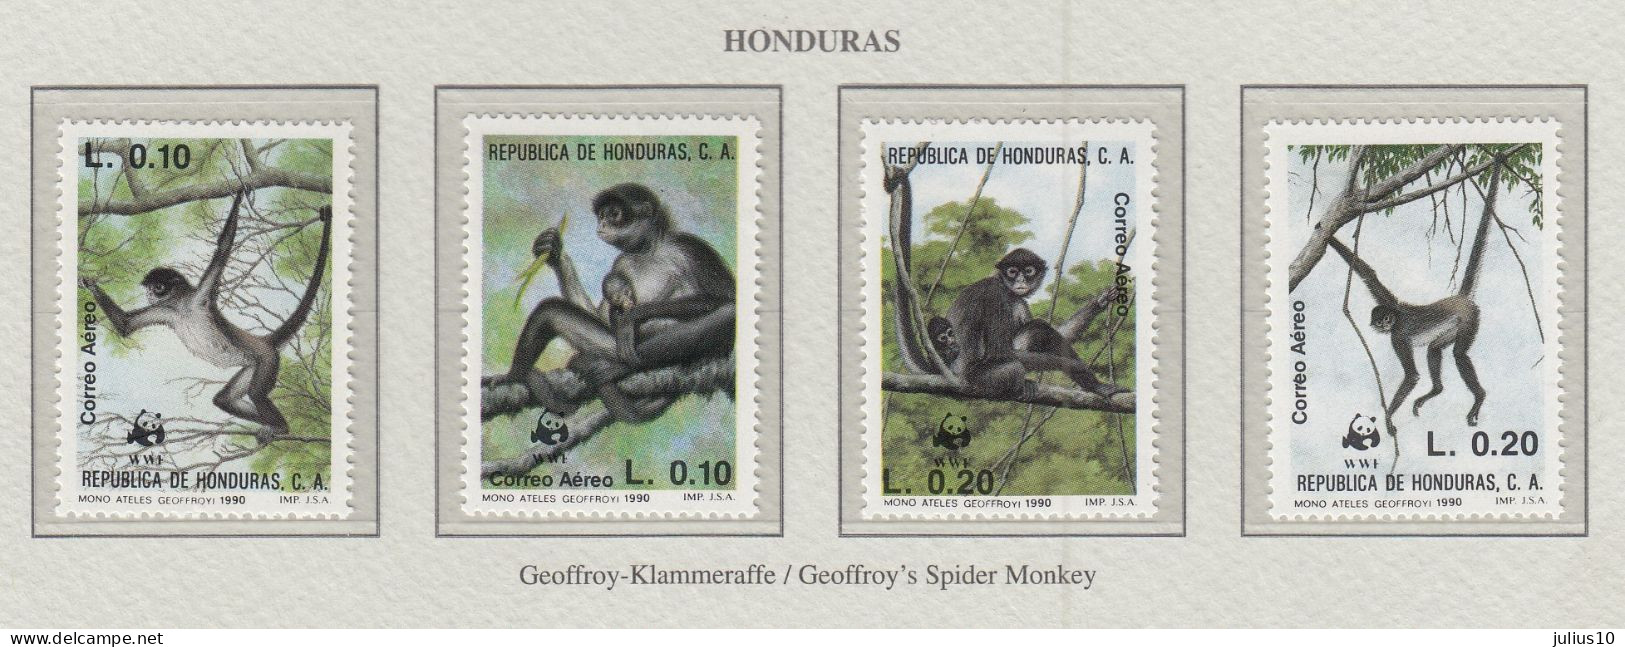 HONDURAS 1990 WWF Mammals Monkeys Mi 1084-1087 MNH(**) Fauna 777 - Mono